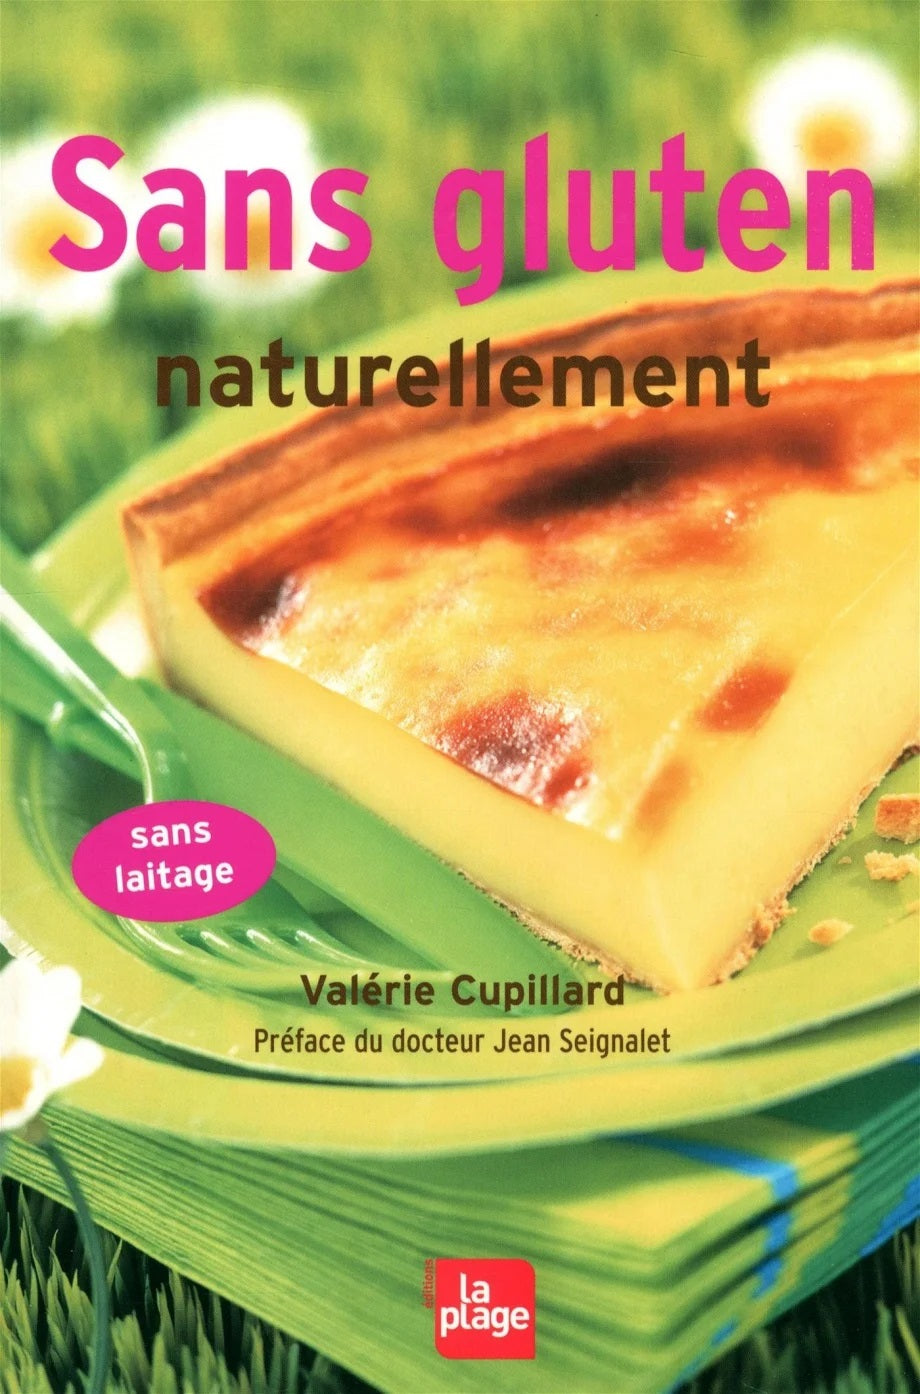 Sans gluten naturellement - Valérie Cupillard